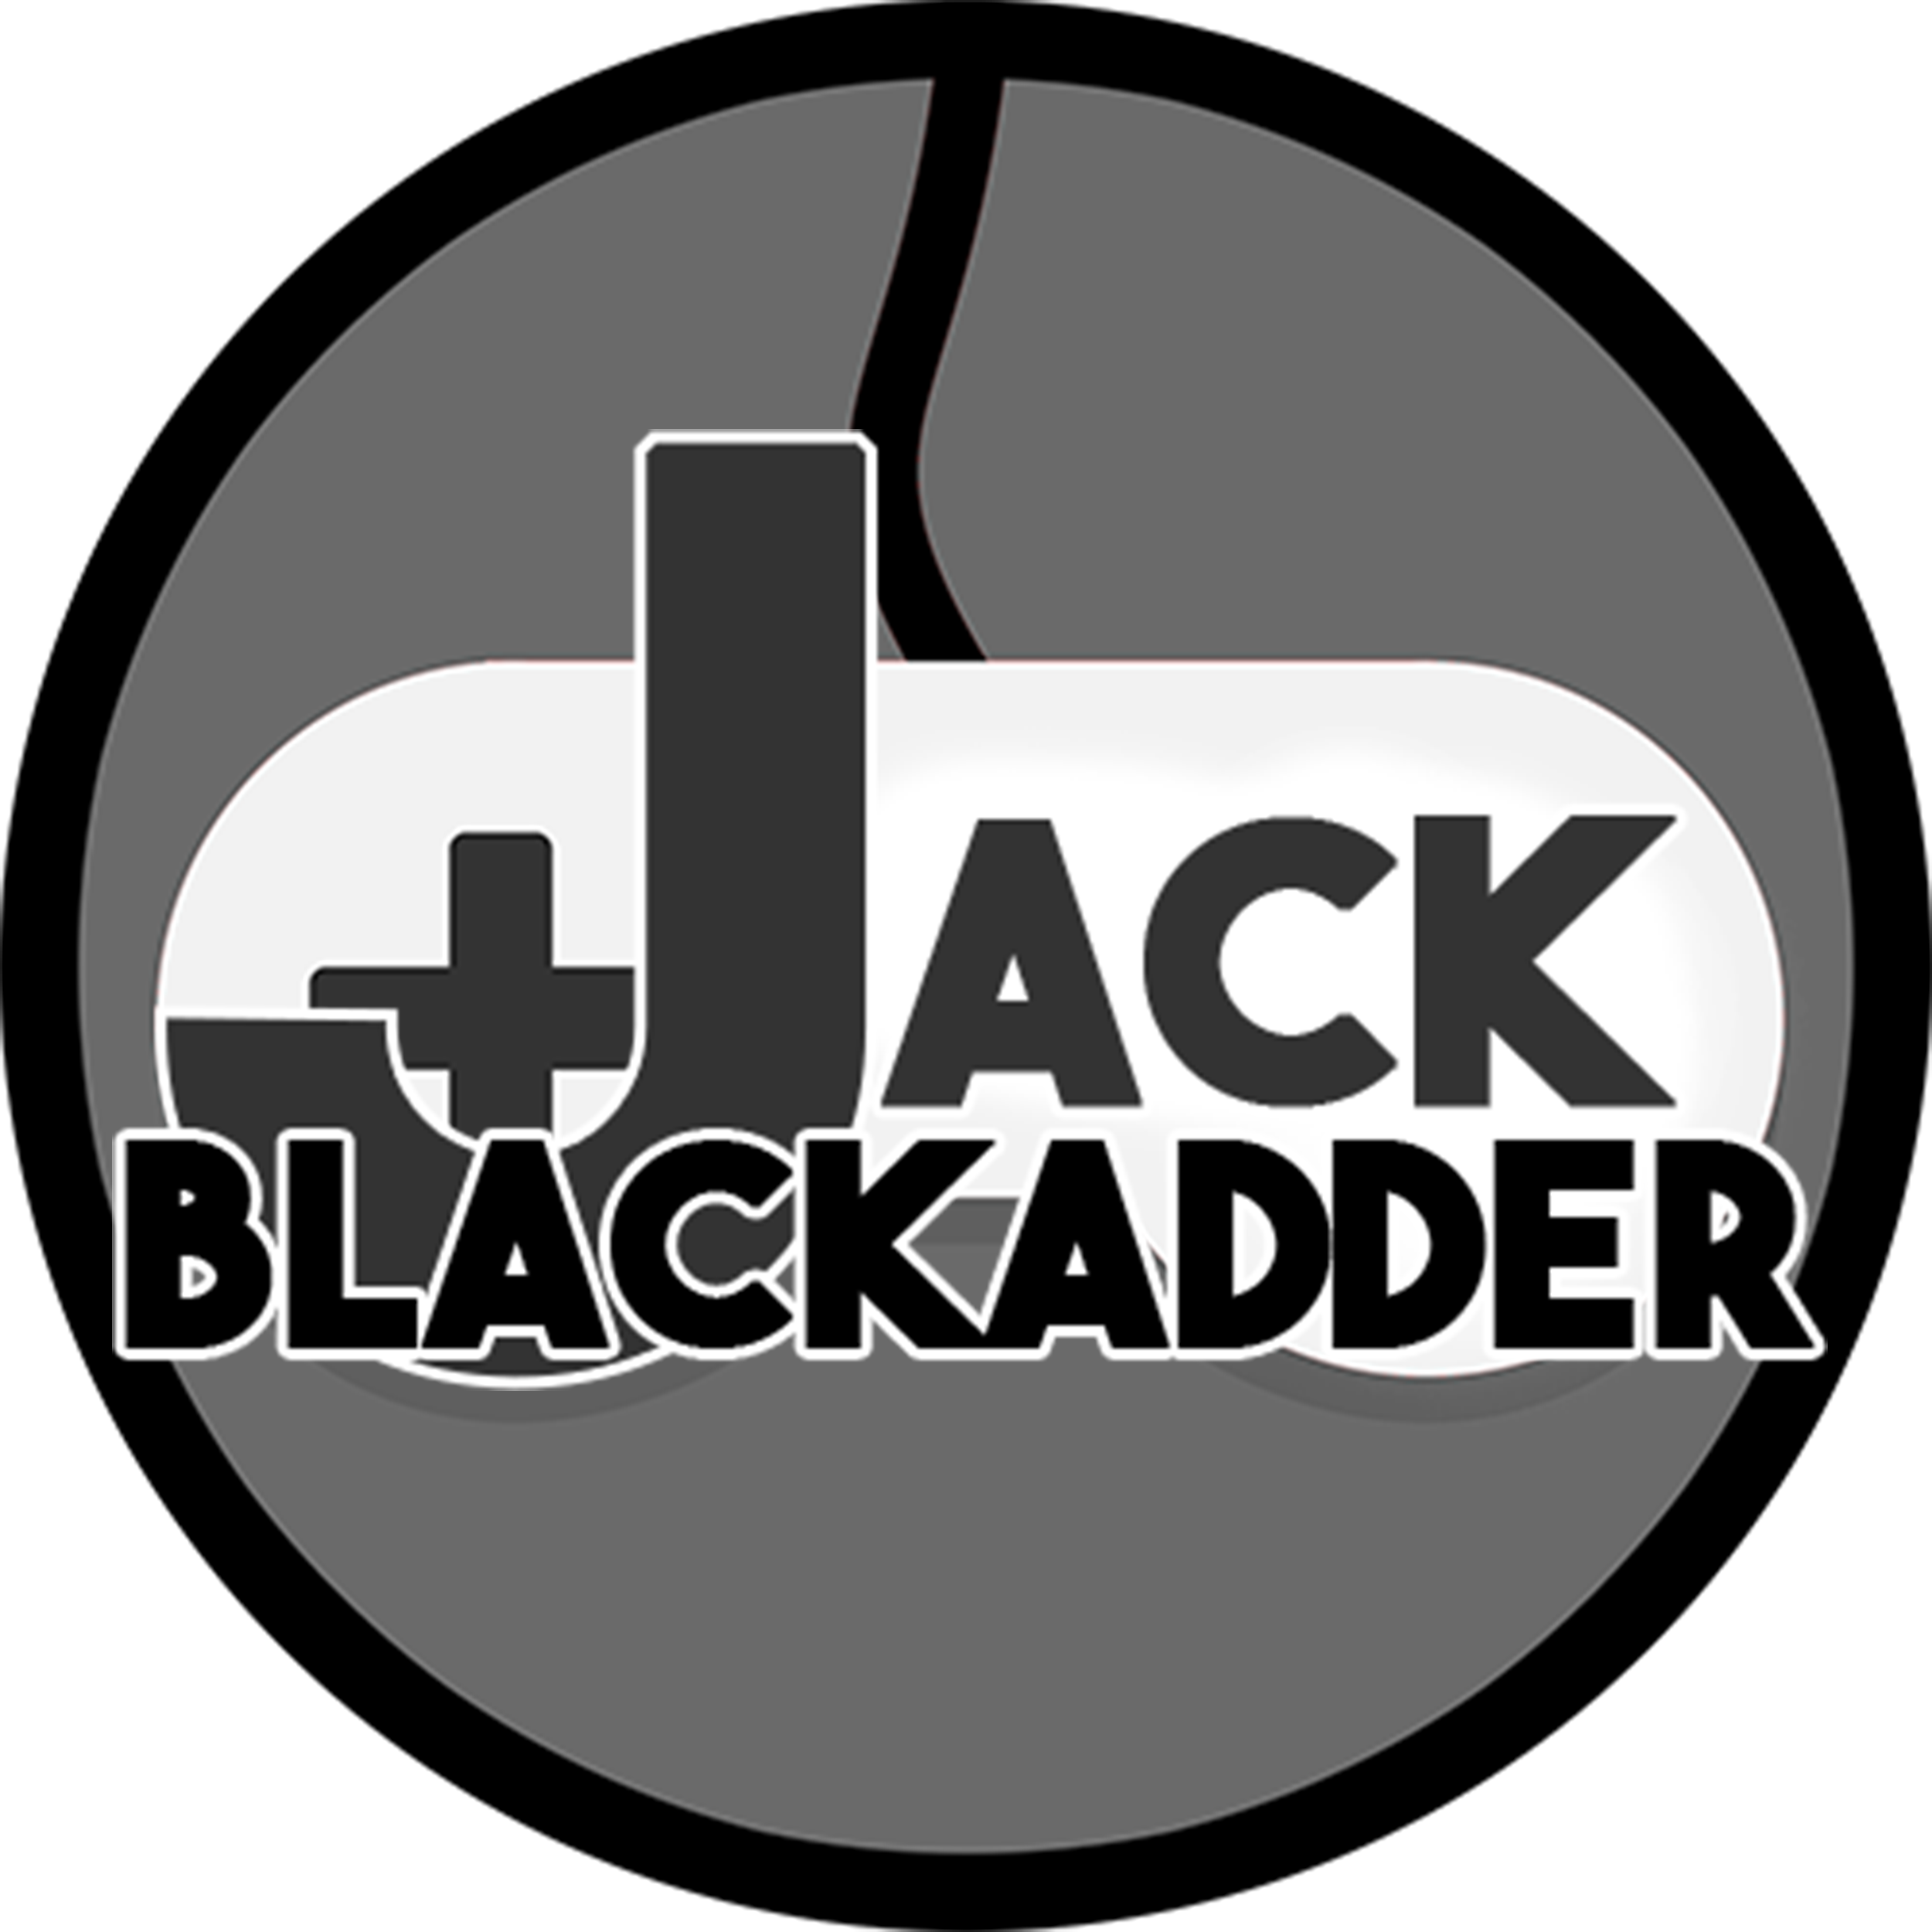 Jack Blackadder American Heroes List